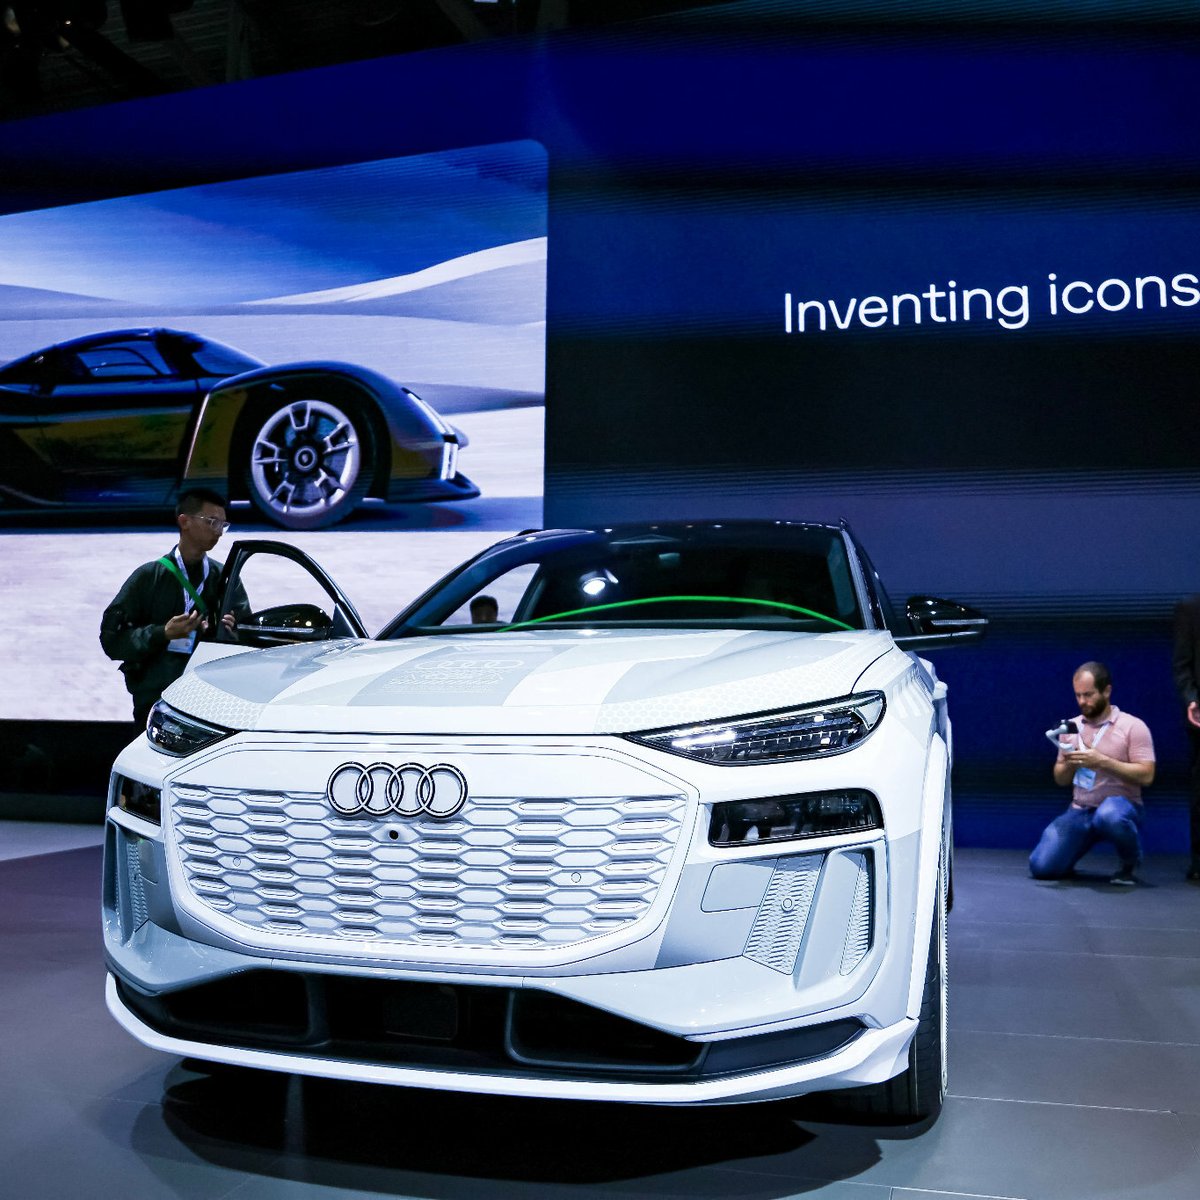 Beliebtes Audi-Modell vor dem Aus: Produktion nach 25 Jahren gestoppt